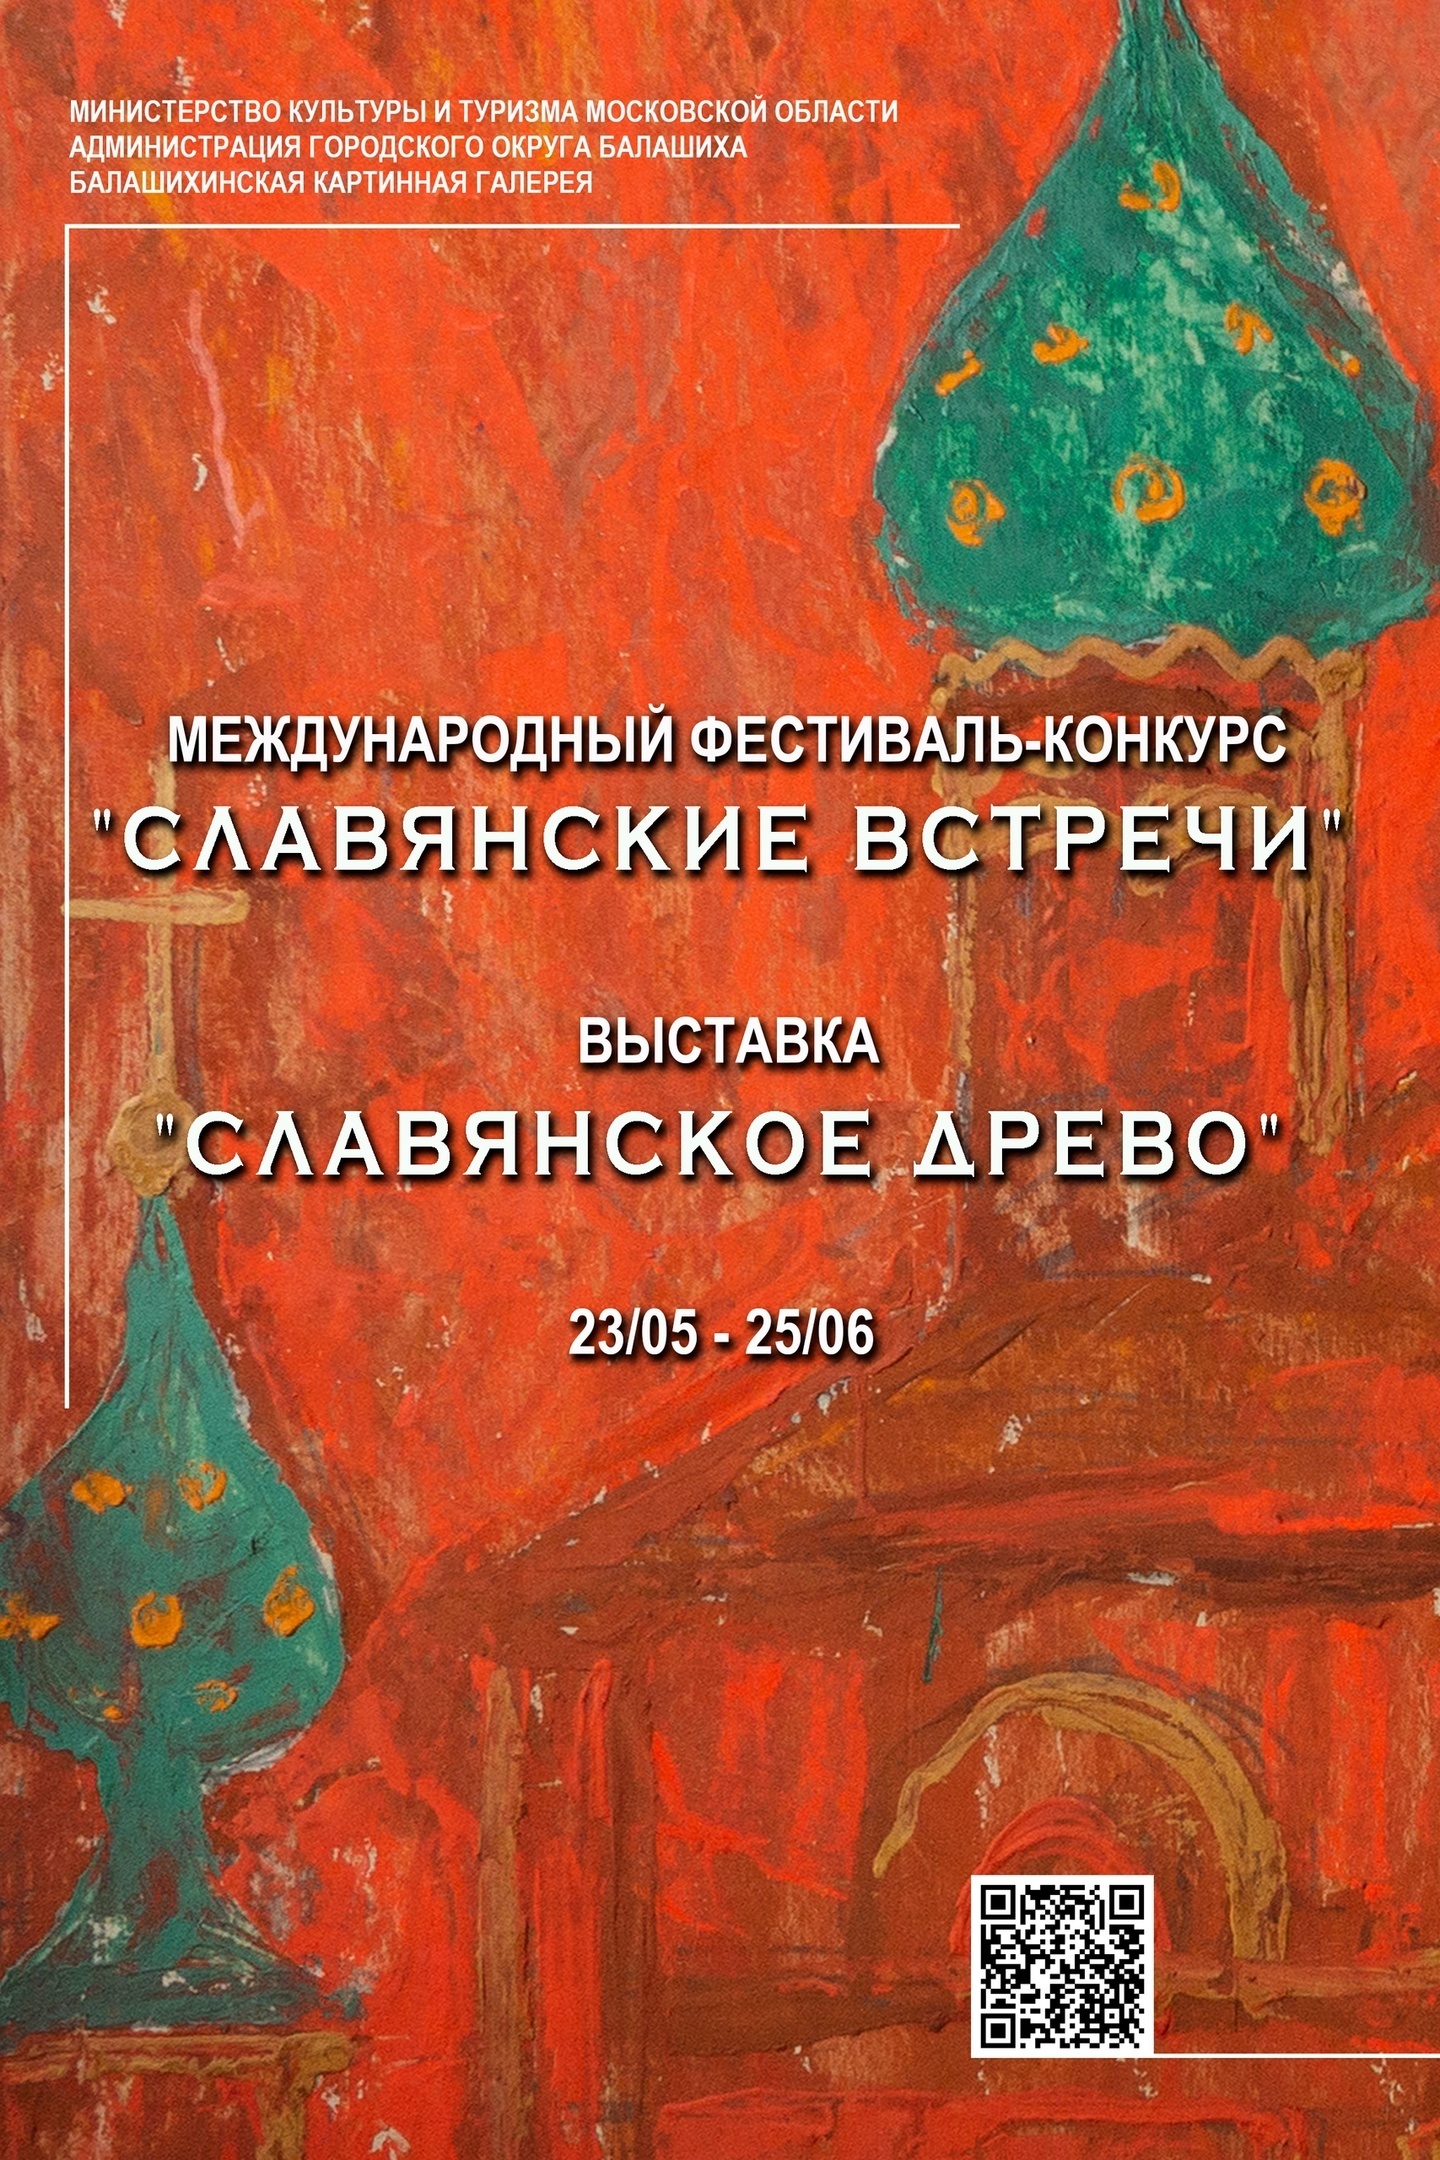 Выставка «Славянское древо»